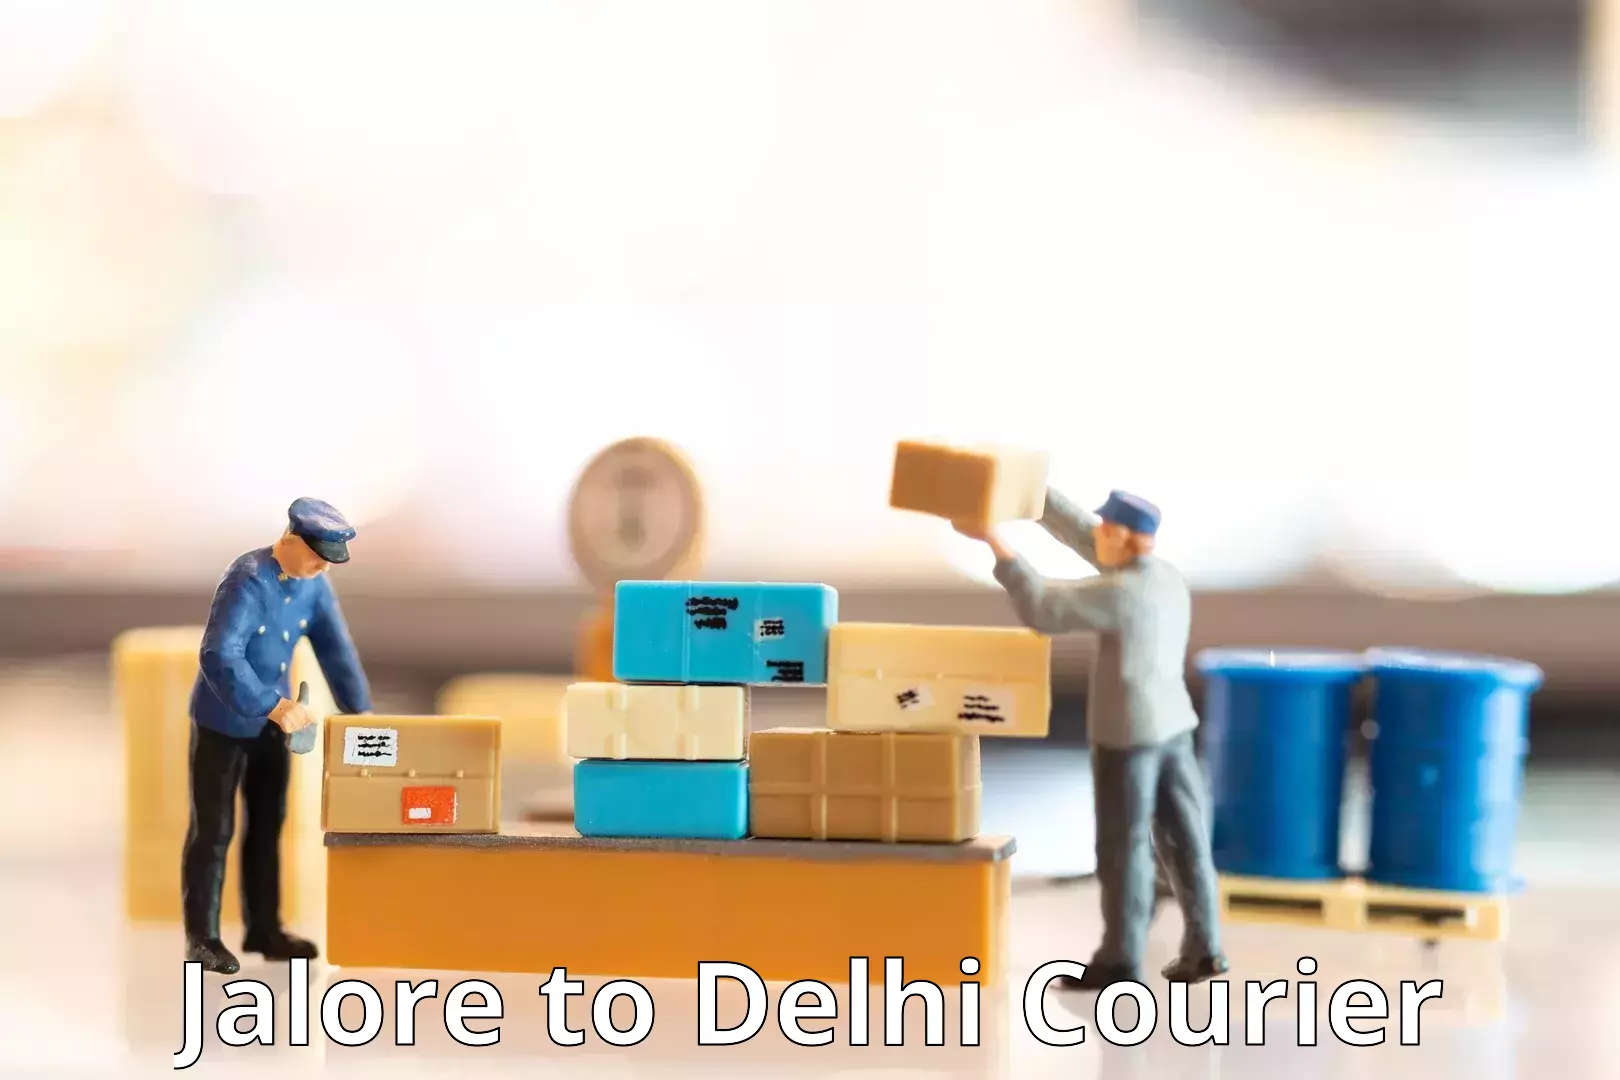 Efficient parcel service Jalore to NIT Delhi